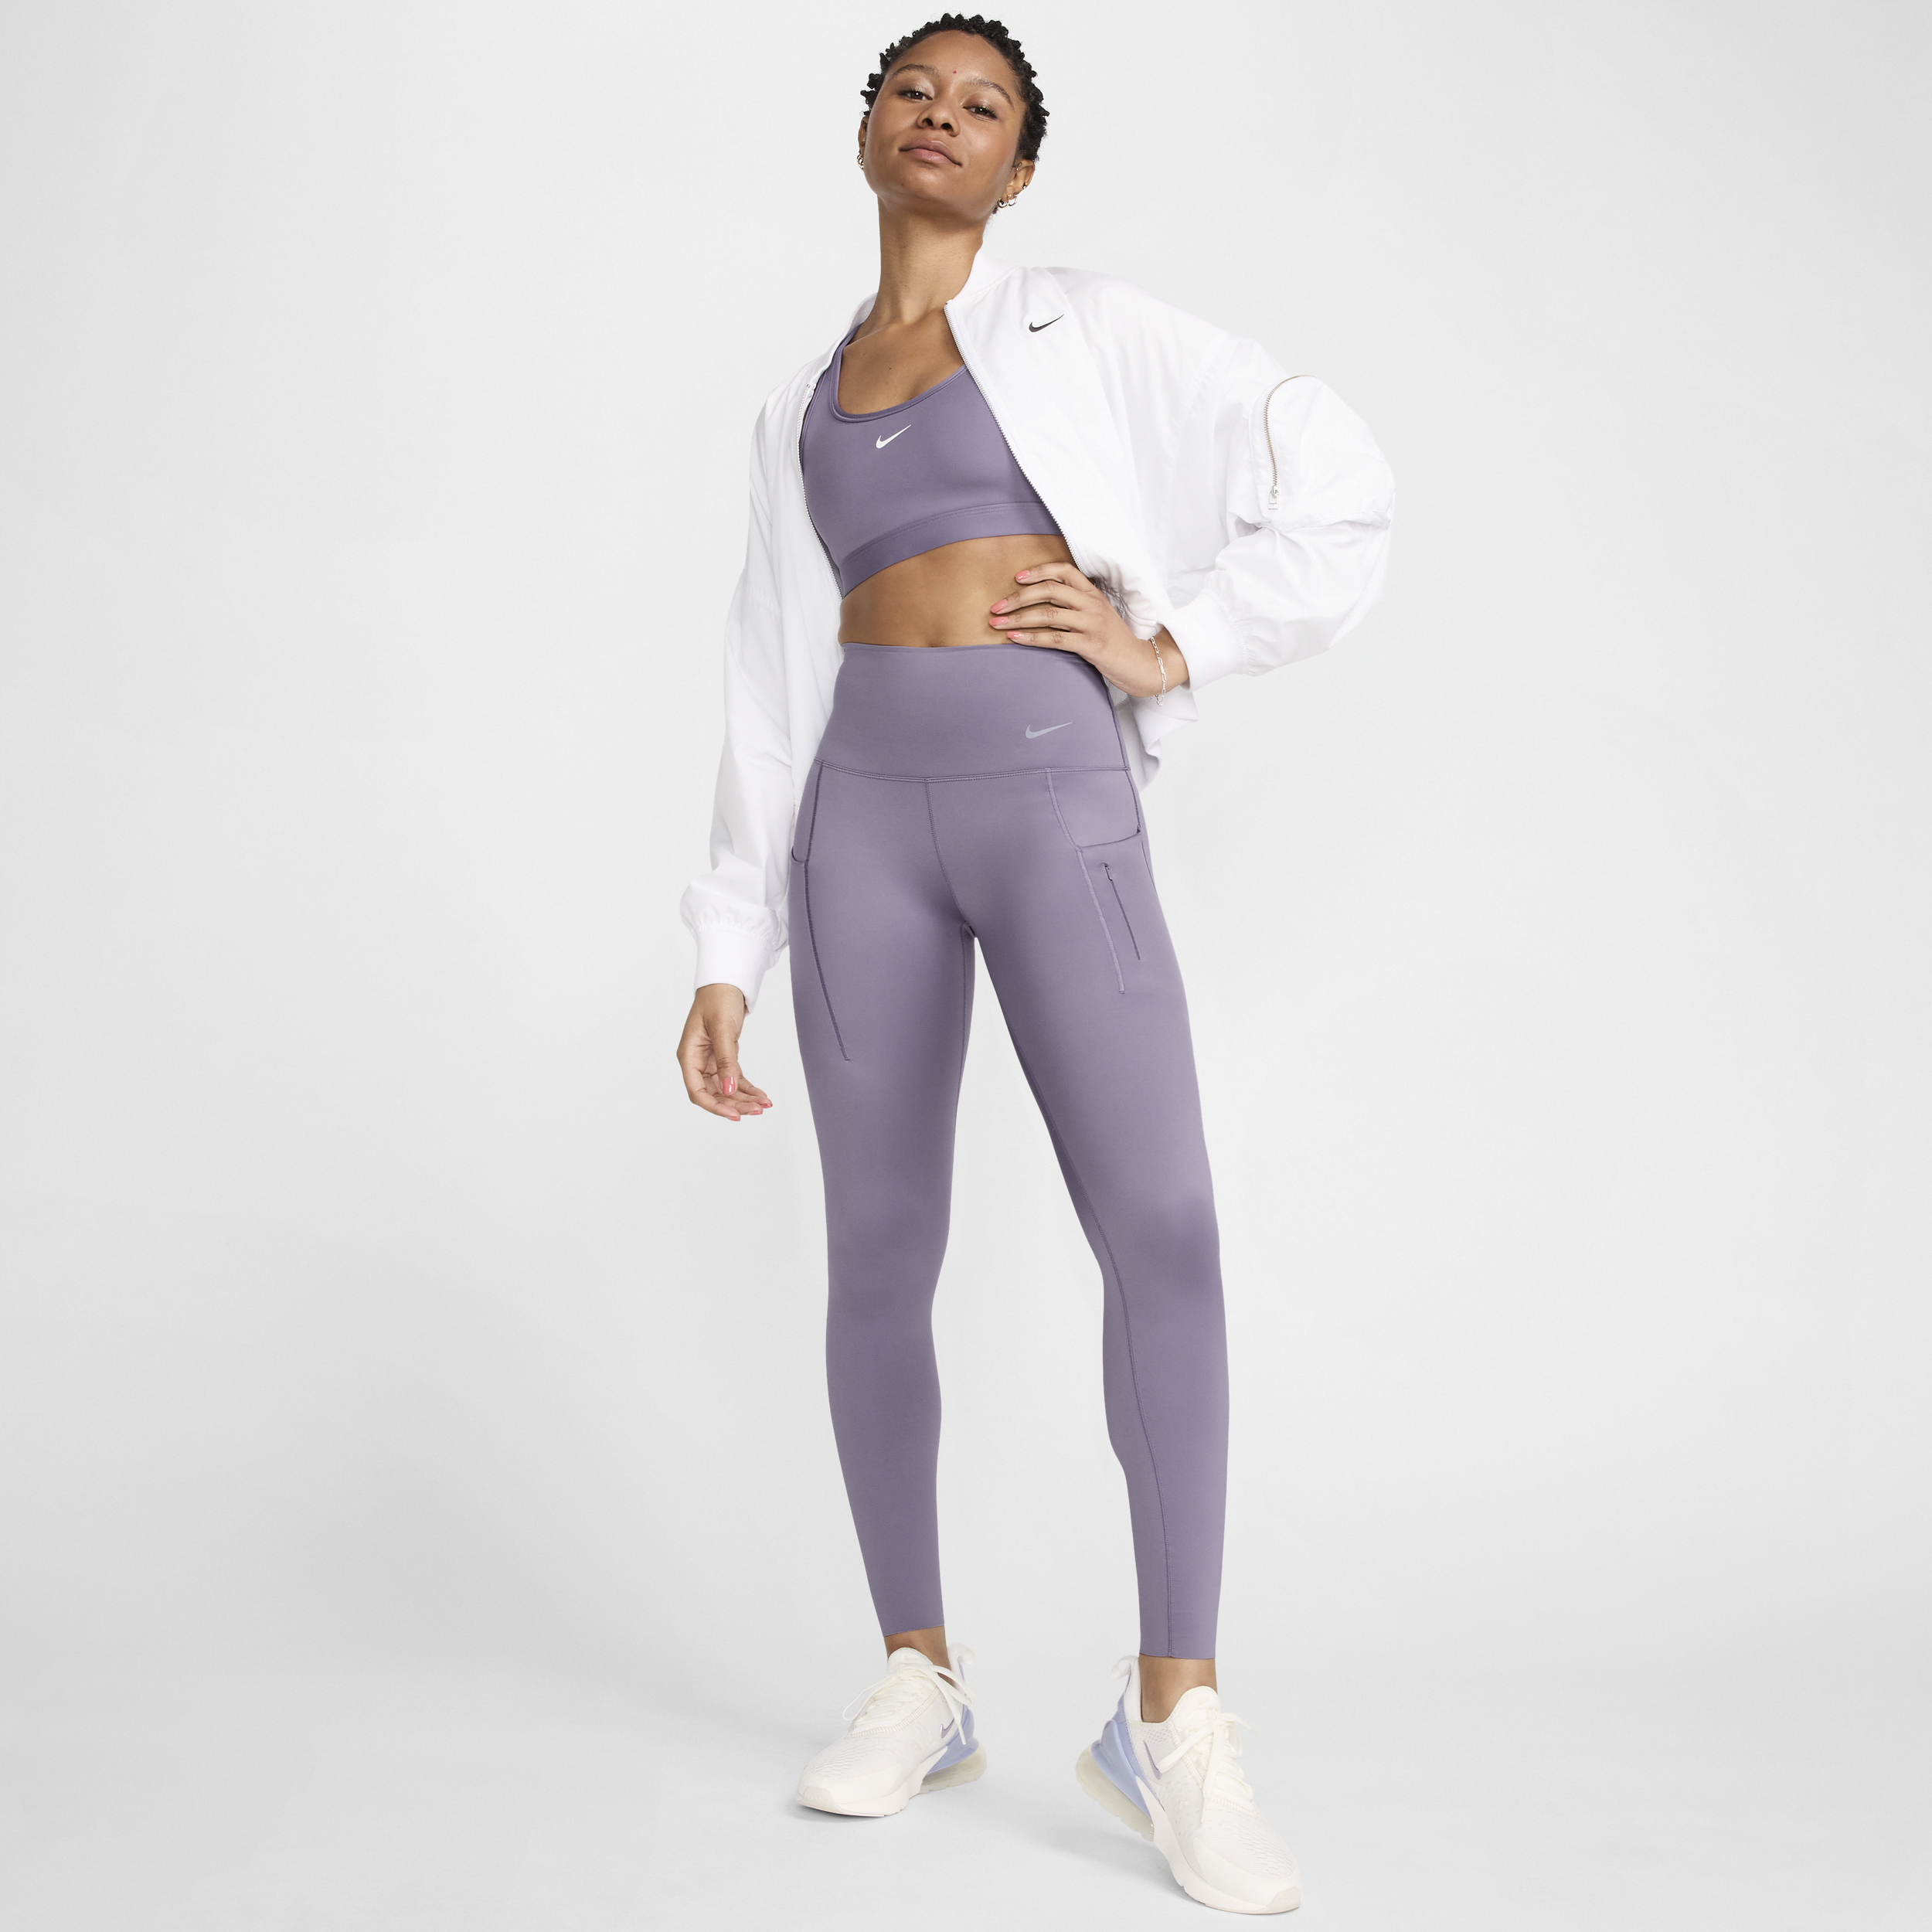 Leggings a tutta lunghezza a vita alta con tasche e sostegno elevato Nike Go – Donna - Viola